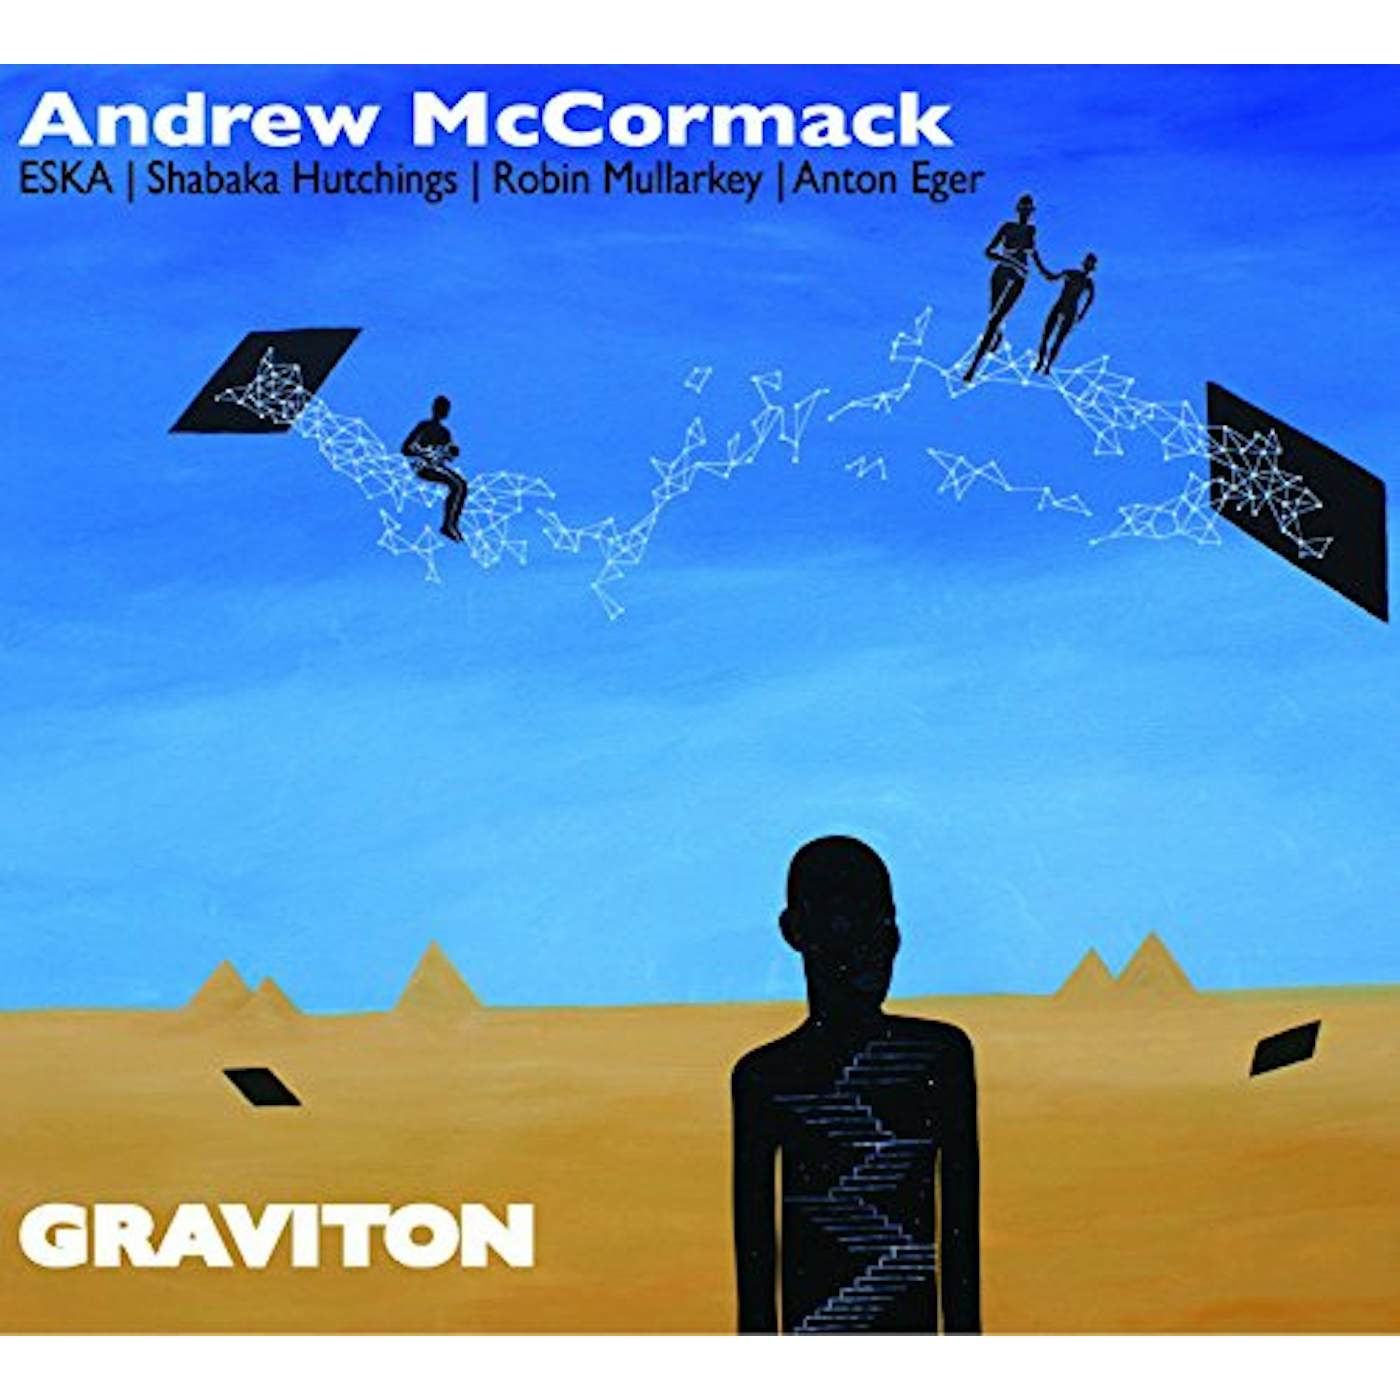 Andrew McCormack Graviton Vinyl Record